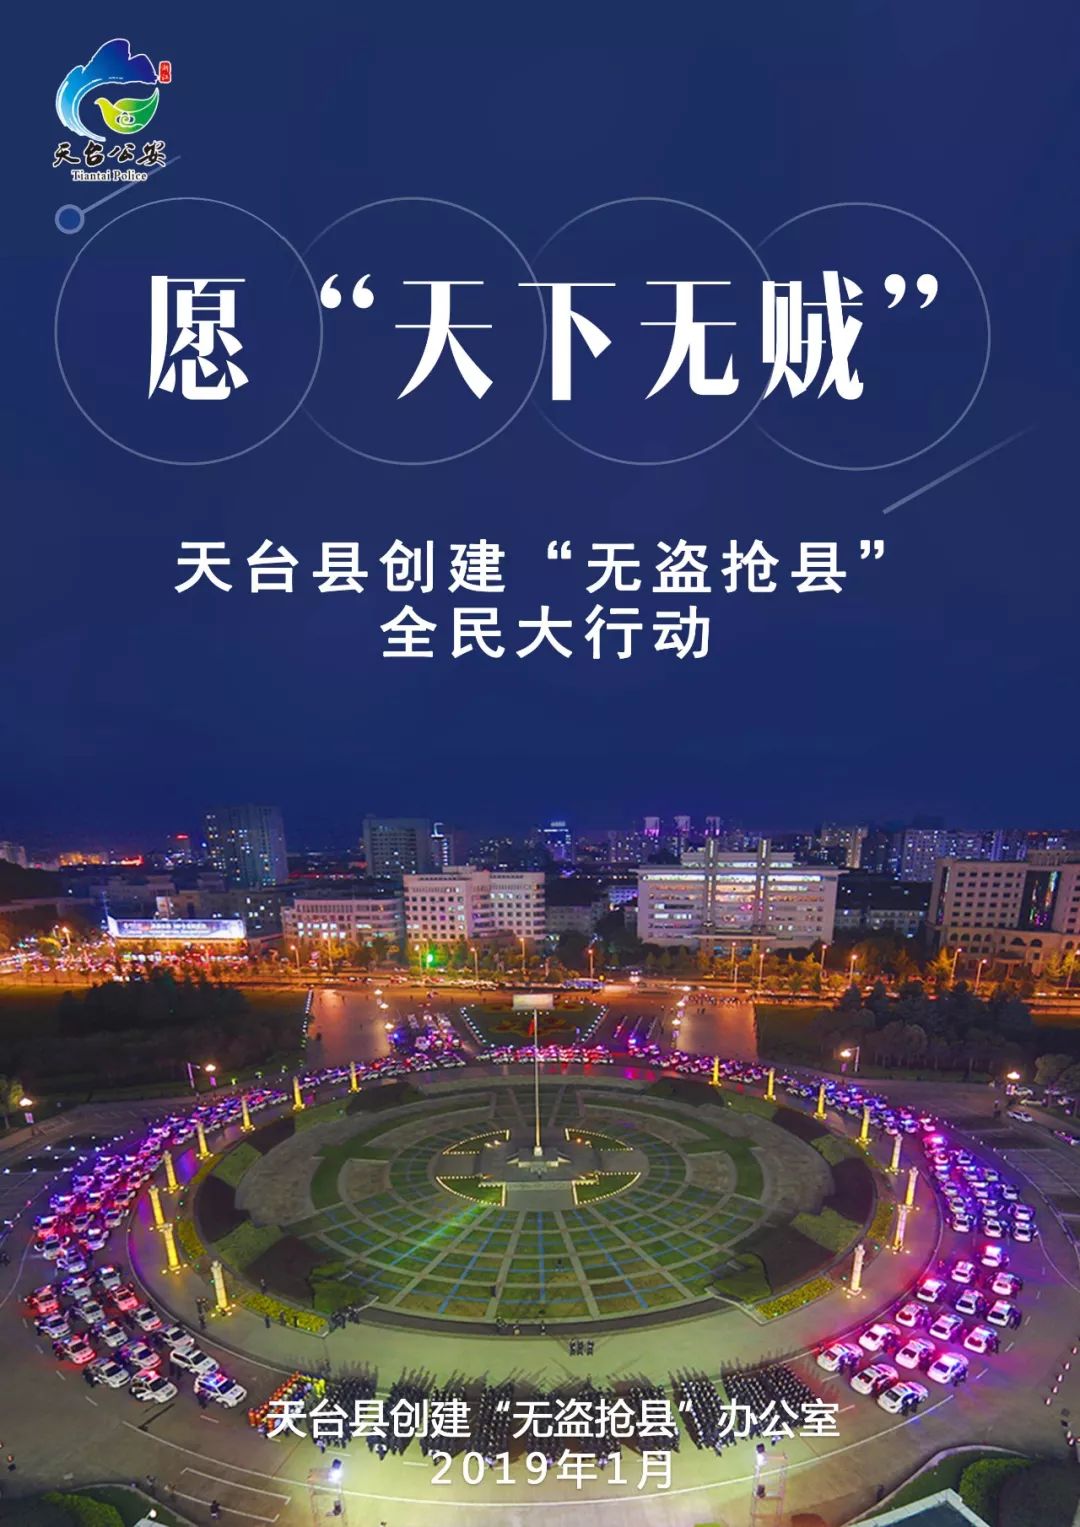 关于公布《台州市电动自行车物联网服务点目录》的通告